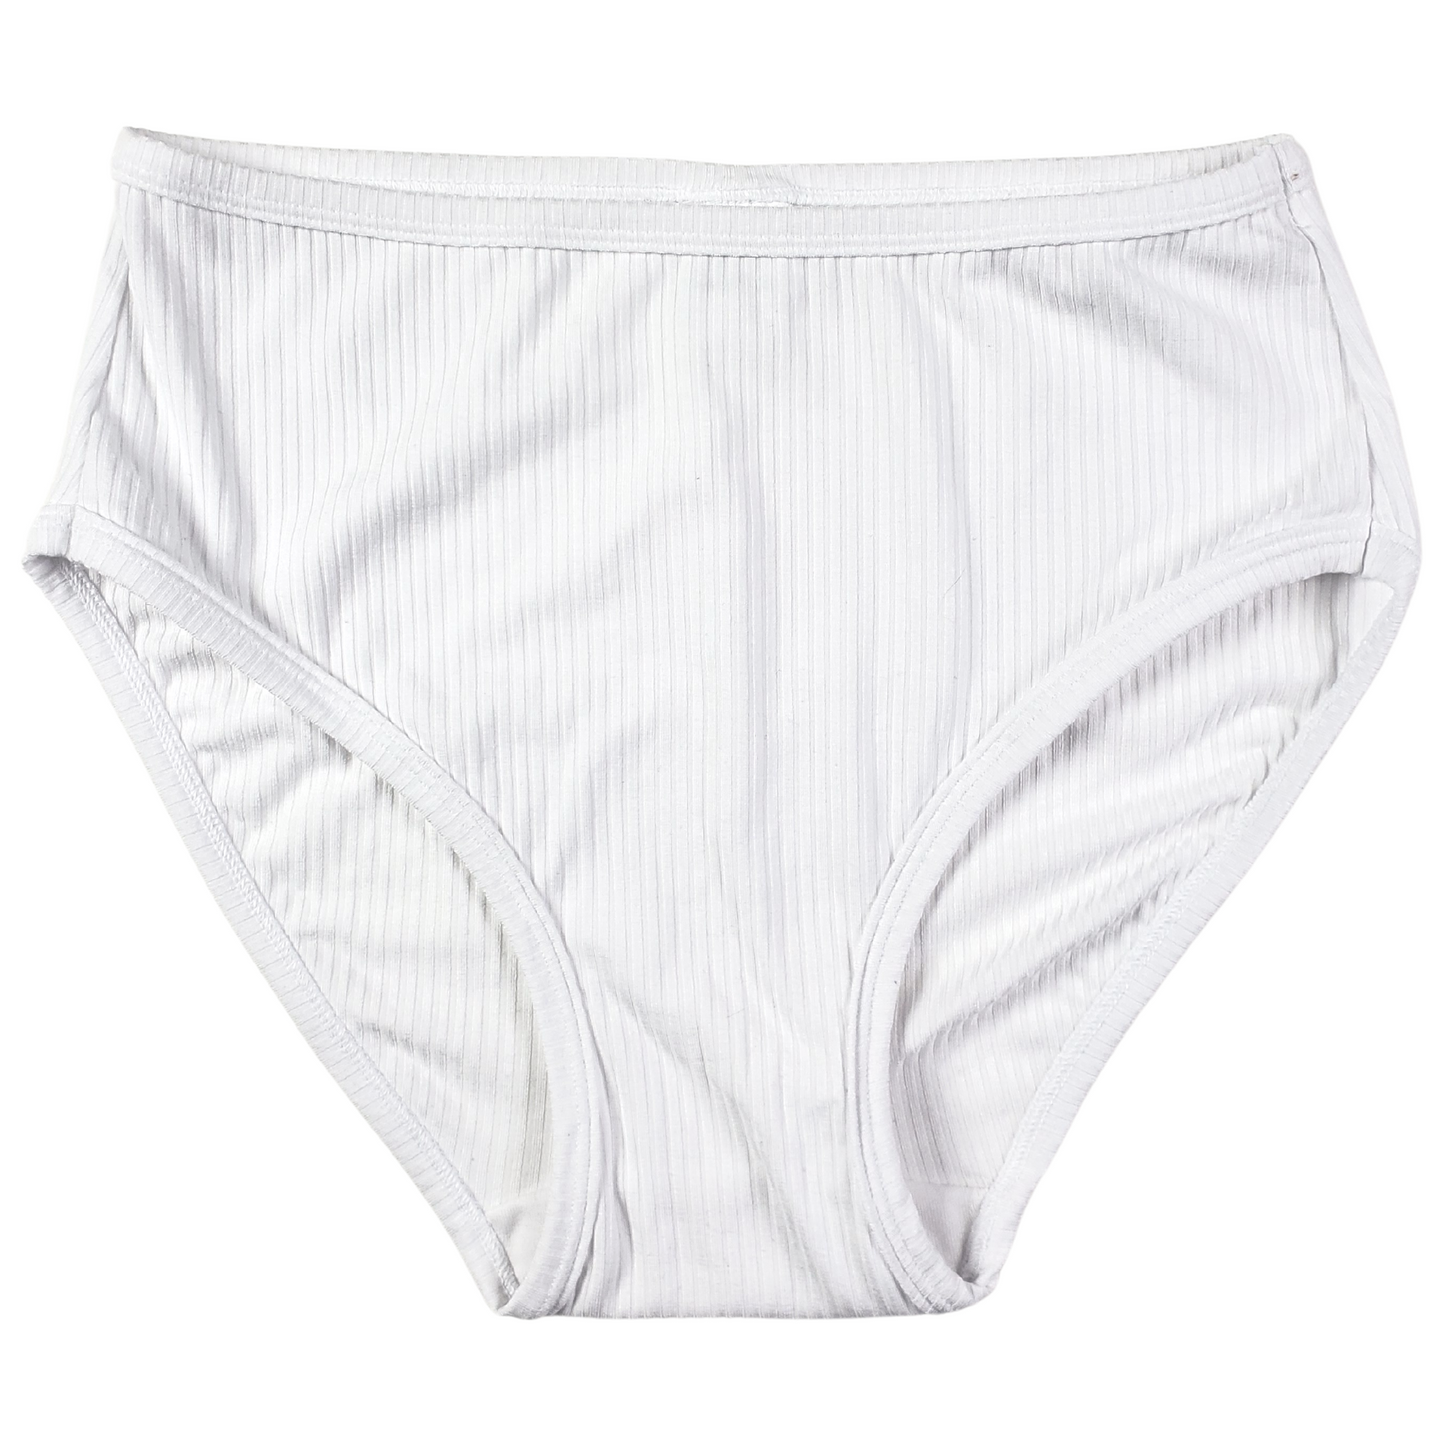 Friends Girls Stretch Hipster Briefs Underwear, 4-Pack Sizes 6-10 